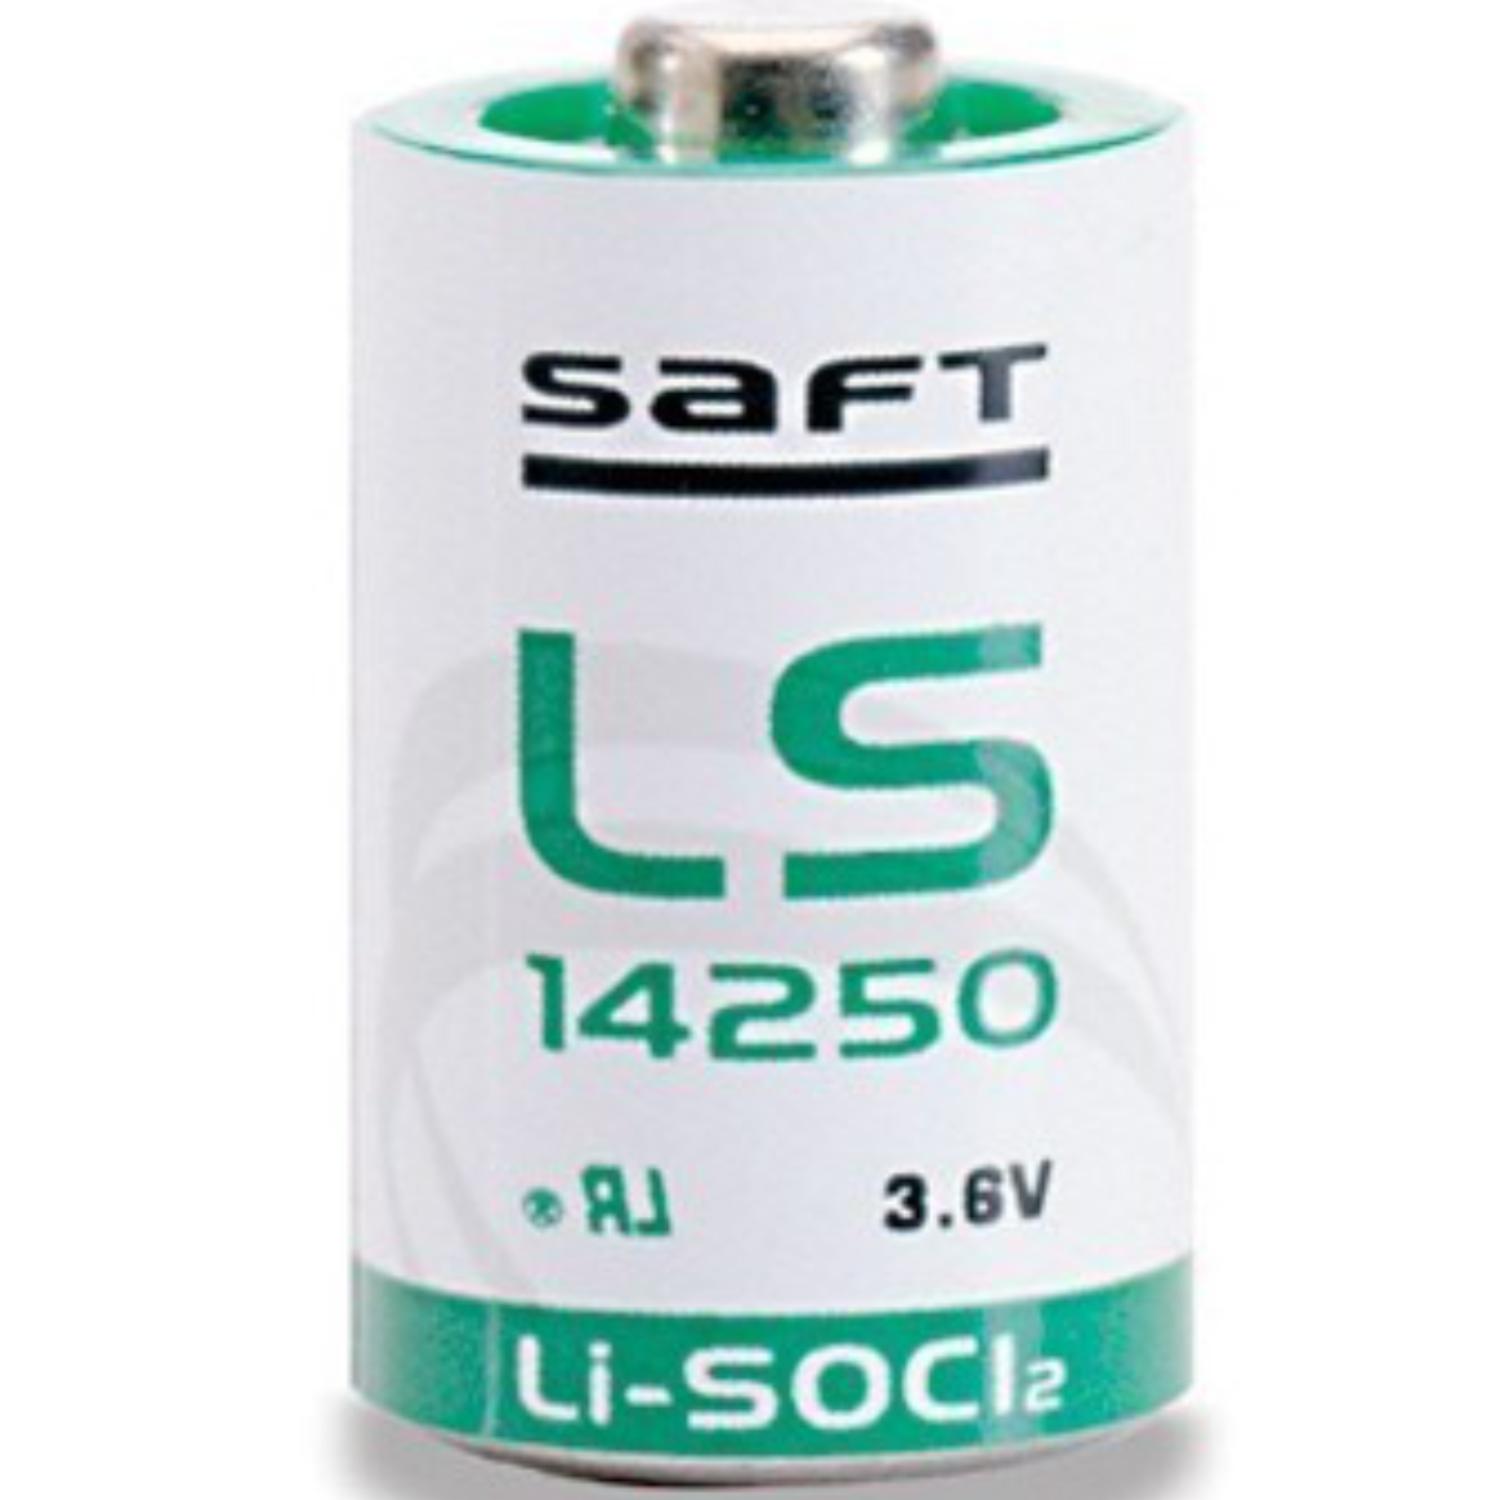 Afvoer De daadwerkelijke beginnen 1/2 AA batterij - Lithium - Aantal: 1 batterij, IEC code: CR1250, Spanning: 3.6  volt, Capaciteit: 1200mAh, Merk: Saft - LS,